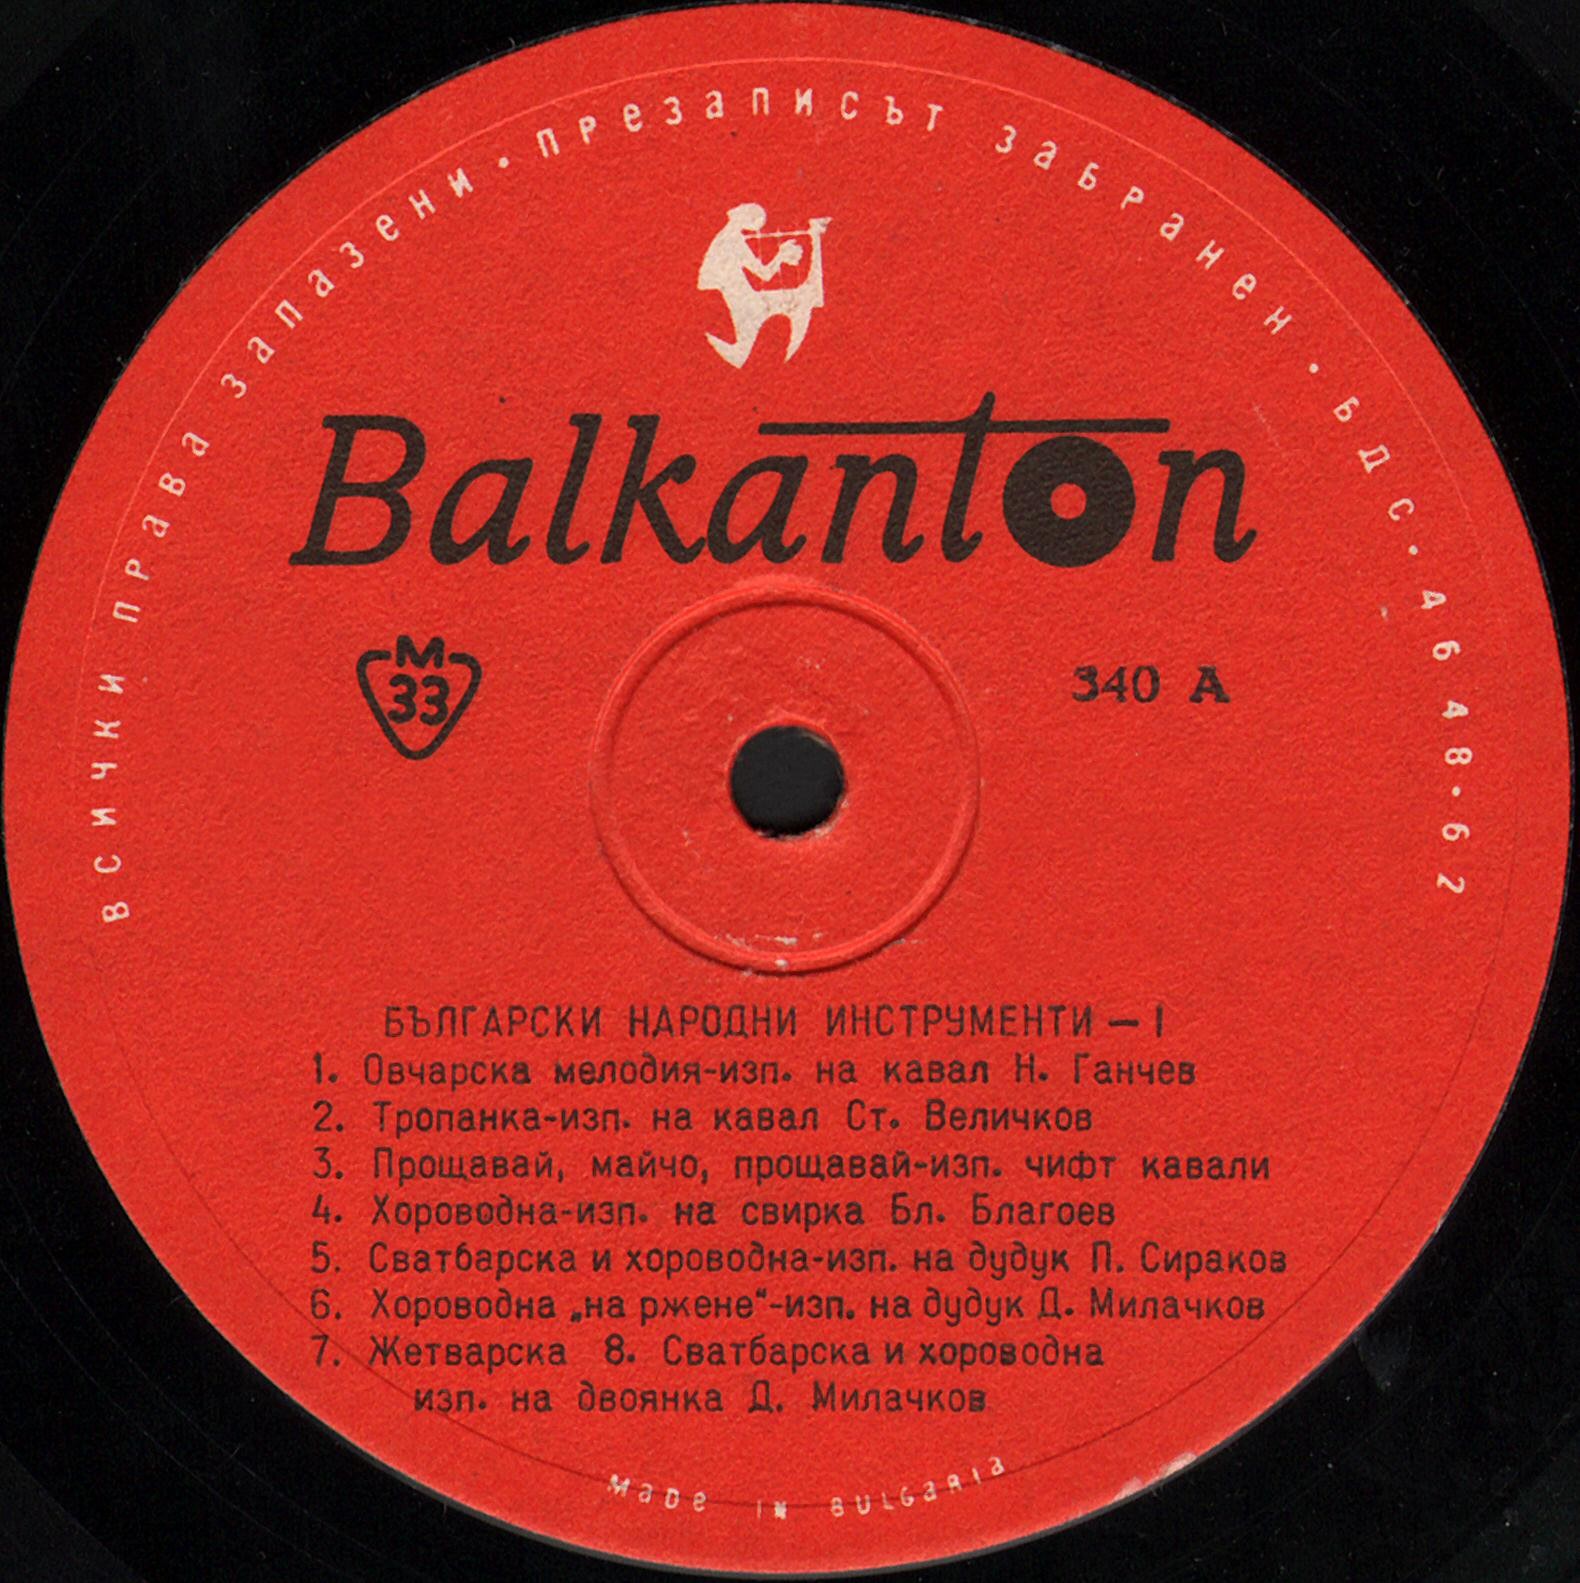 Български народни инструментални мелодии